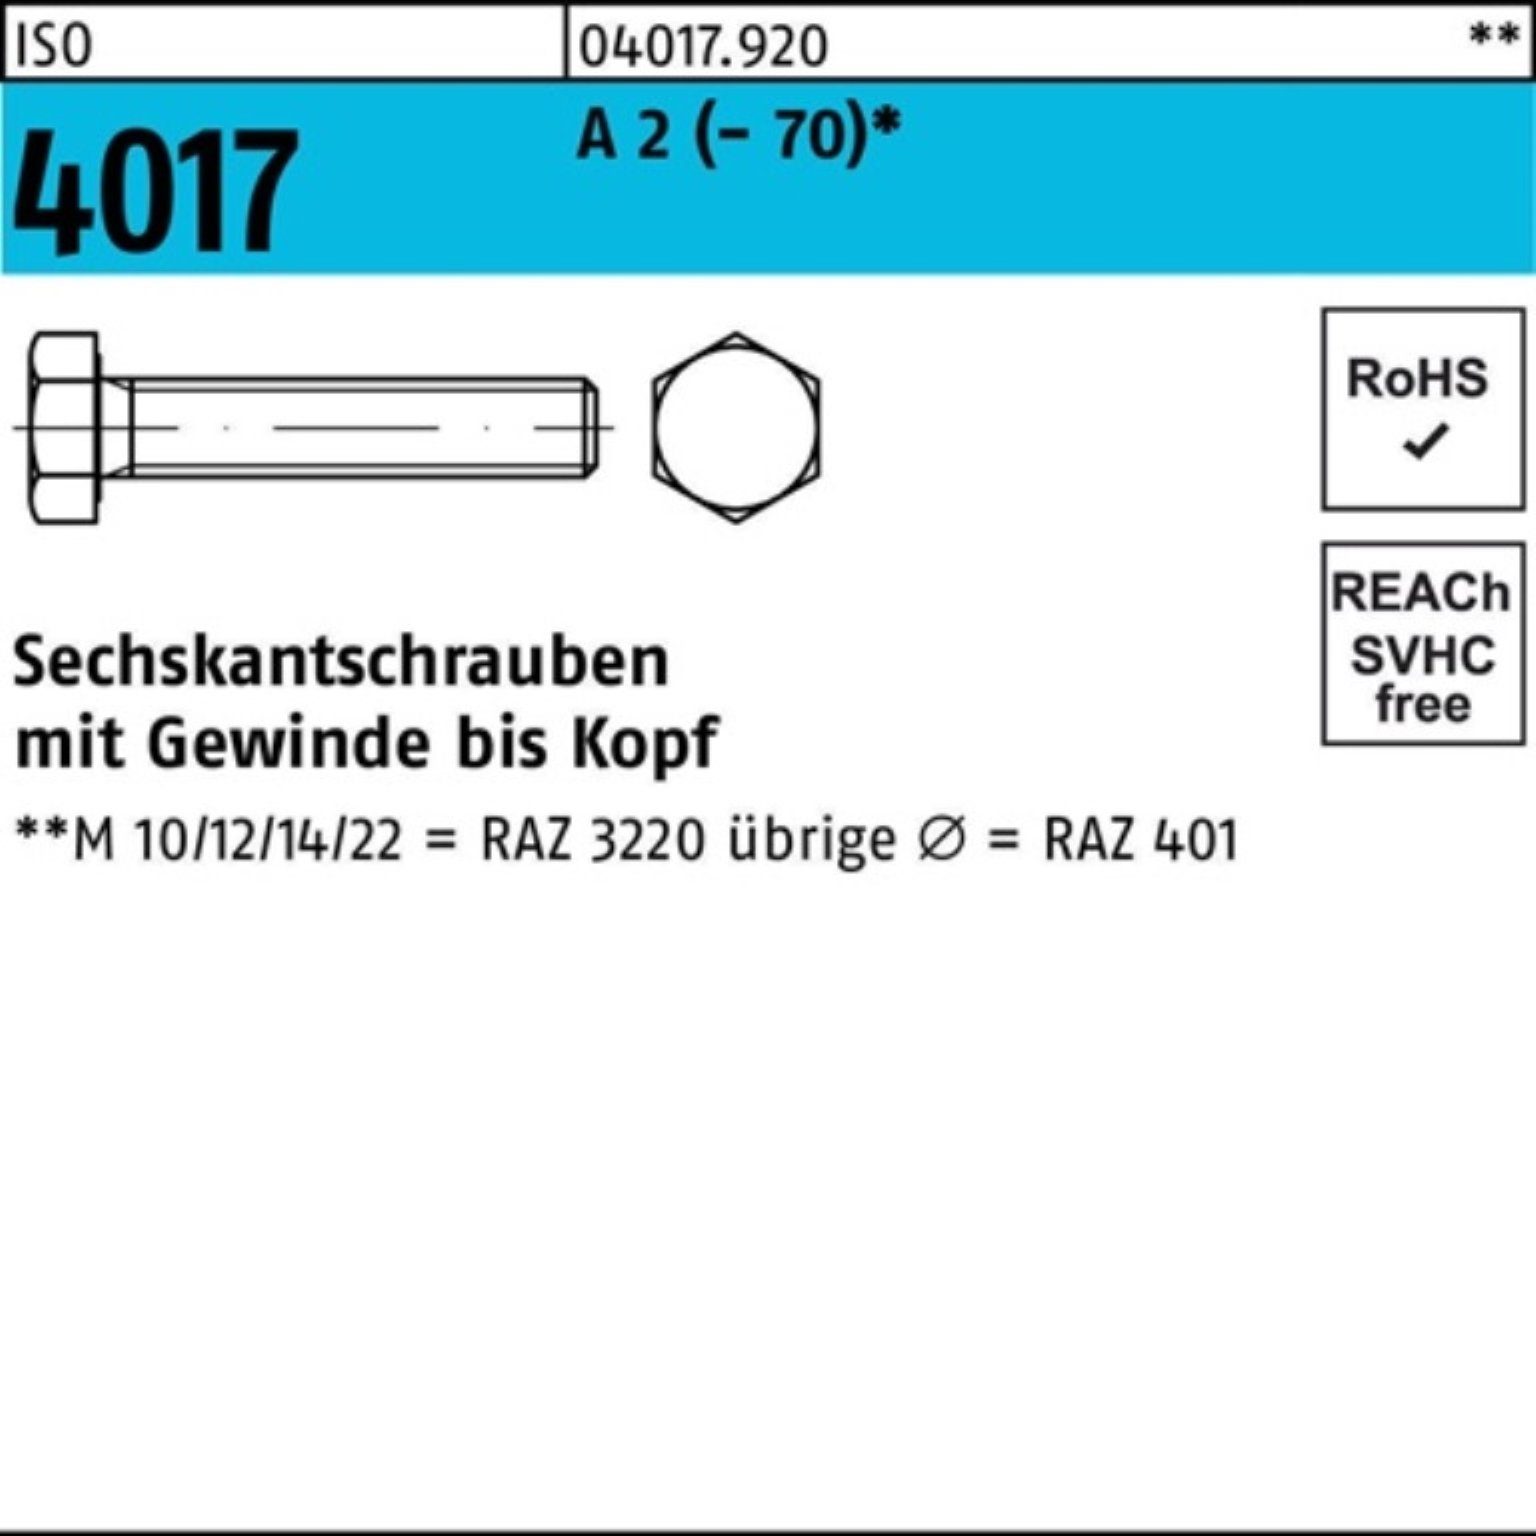 Pack VG ISO 2 A 180 Sechskantschraube 4017 1 Stück Bufab Sechskantschraube (70) M10x 100er